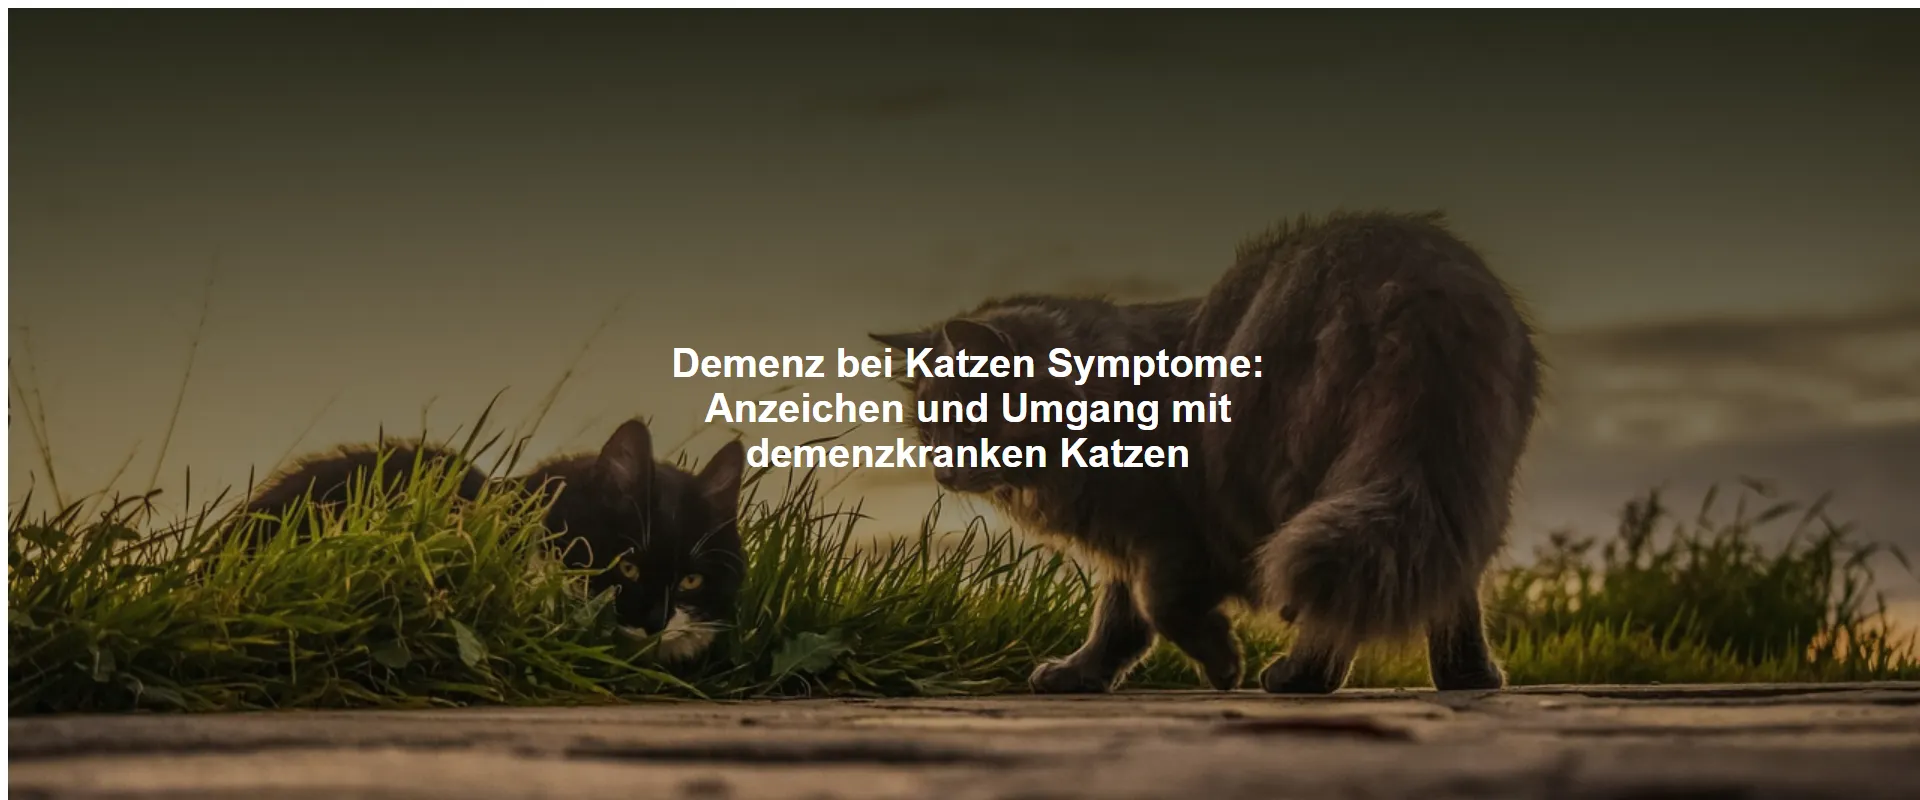 Demenz bei Katzen Symptome – Anzeichen und Umgang mit demenzkranken Katzen